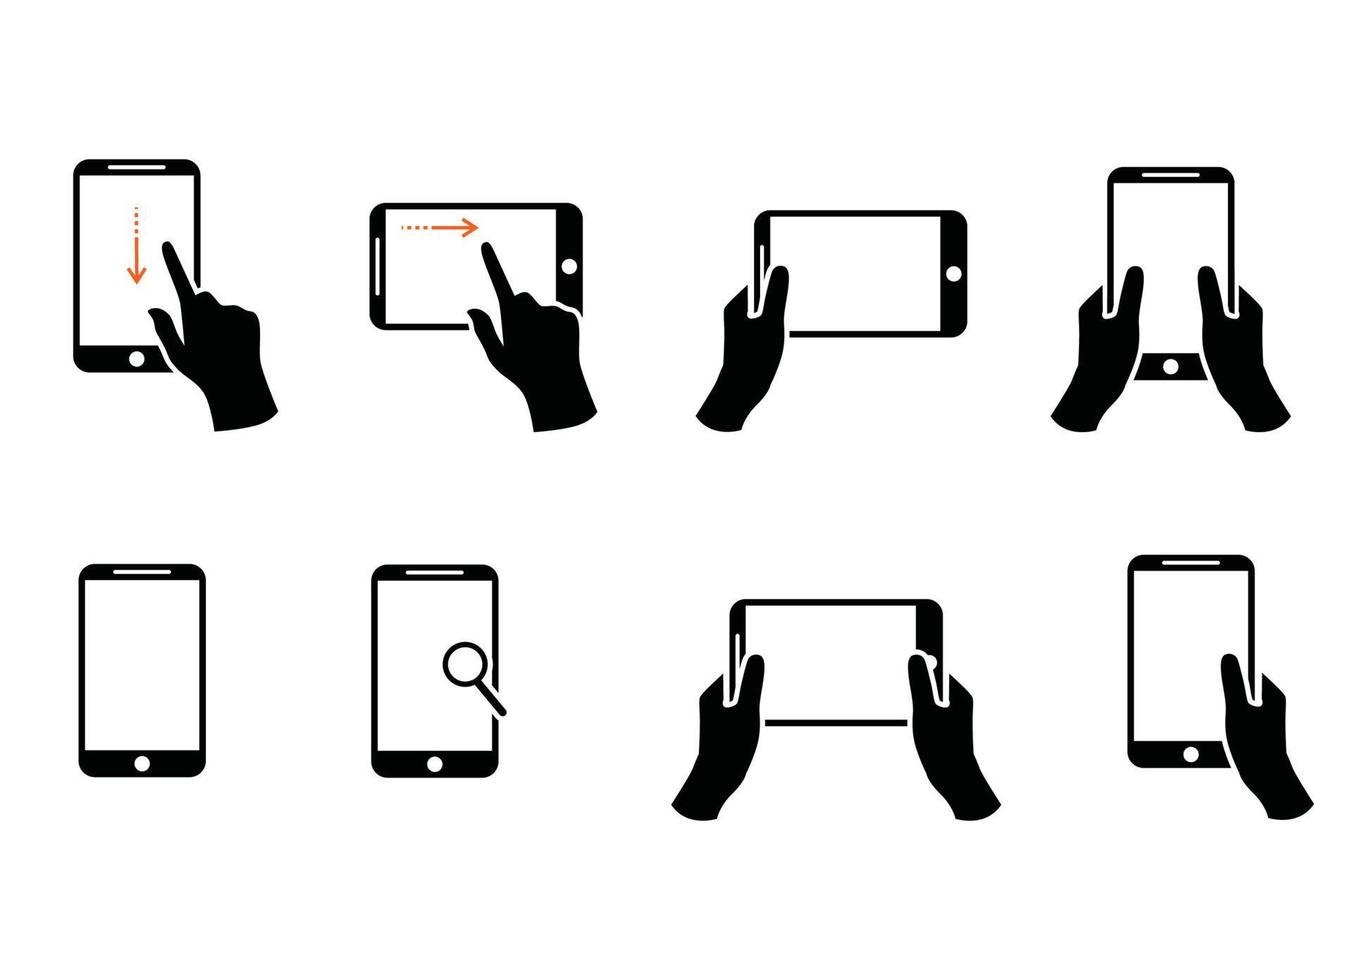 Sammlung von Händen, die ein modernes Smartphone halten, das mit schwarzen Konturlinien gezeichnet ist. Bündel Umrisszeichnungen von Palmen und Telefonen isoliert auf weißem Hintergrund. Vektor-Illustration in monochromen Farben. vektor